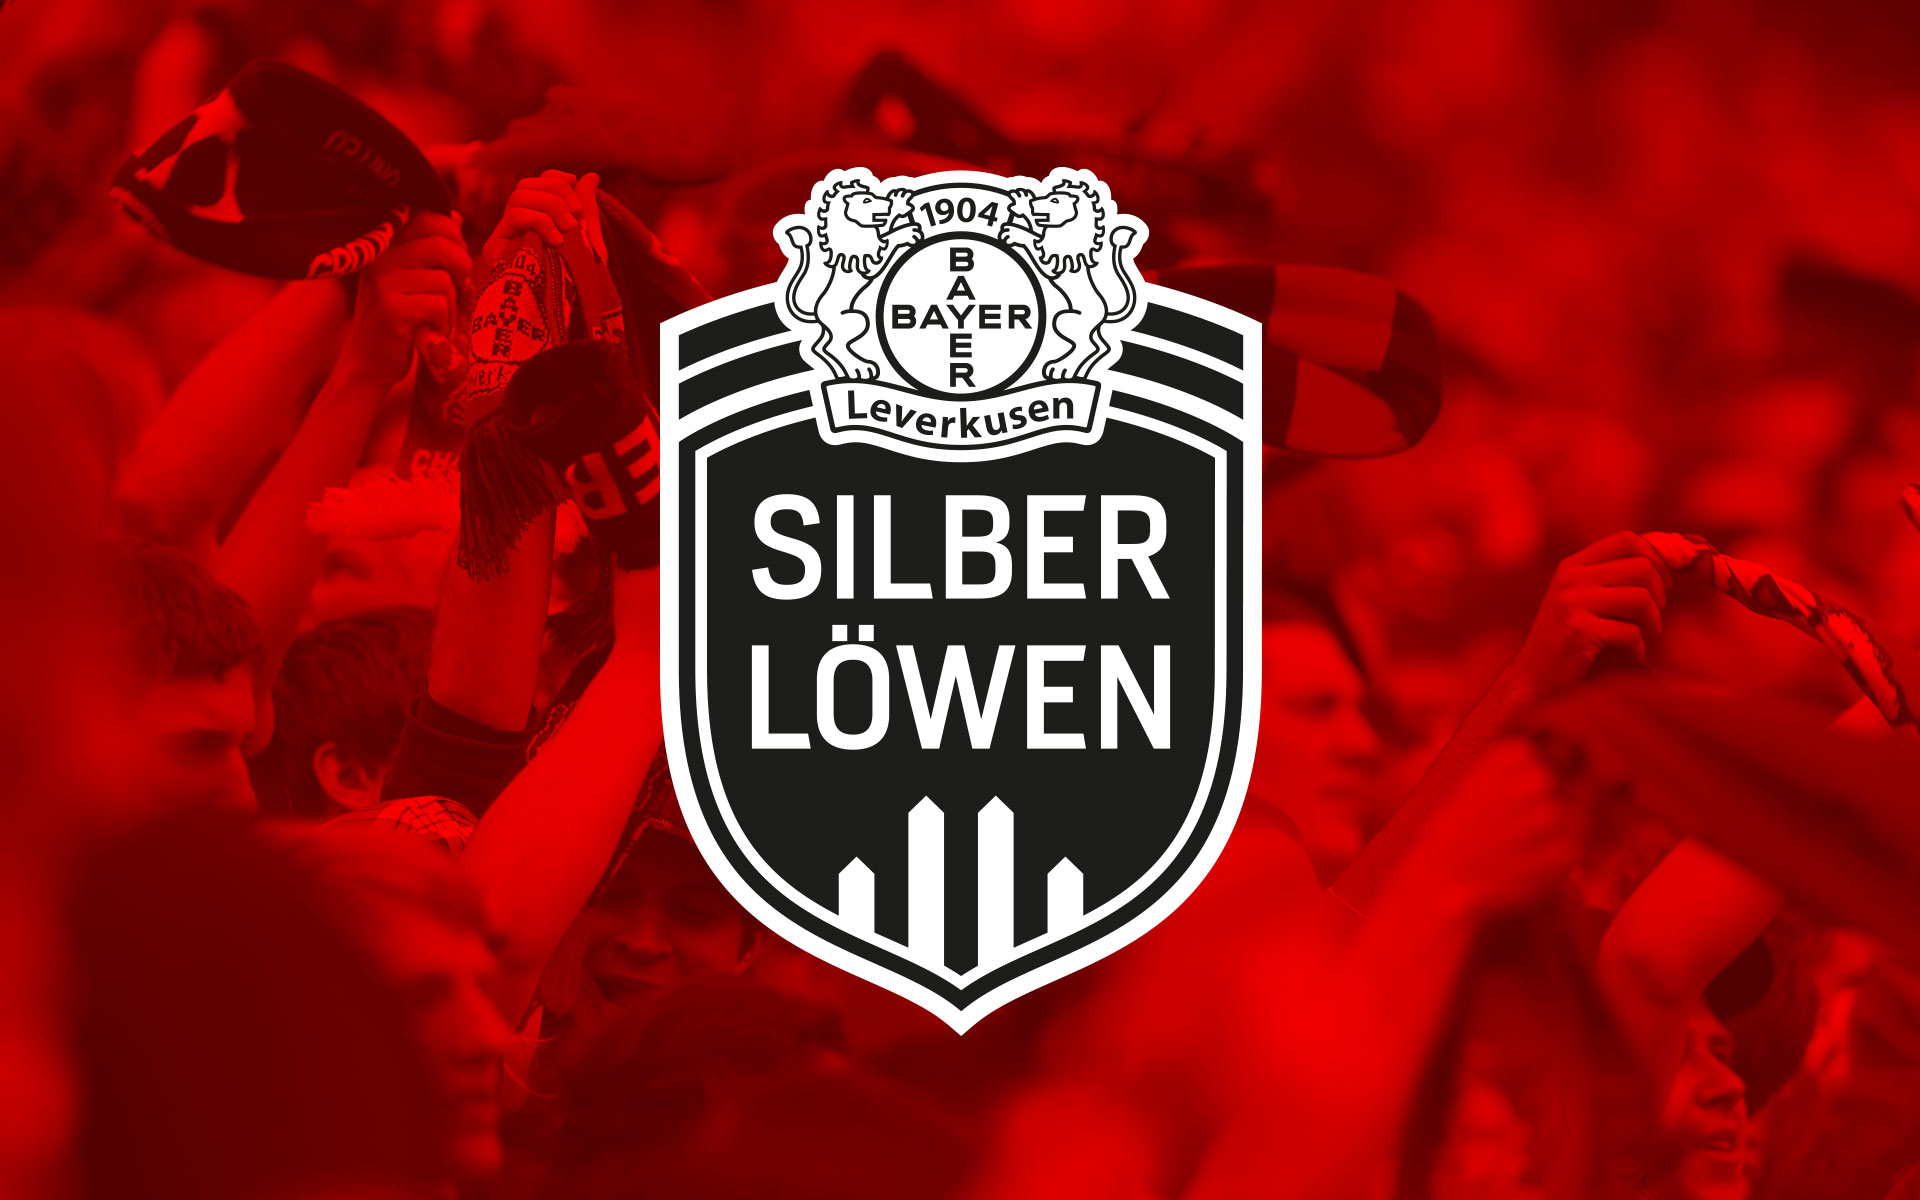 Bayer 04 Leverkusen, Corporate Design Silberlöwen, Produktmarke, Logotype